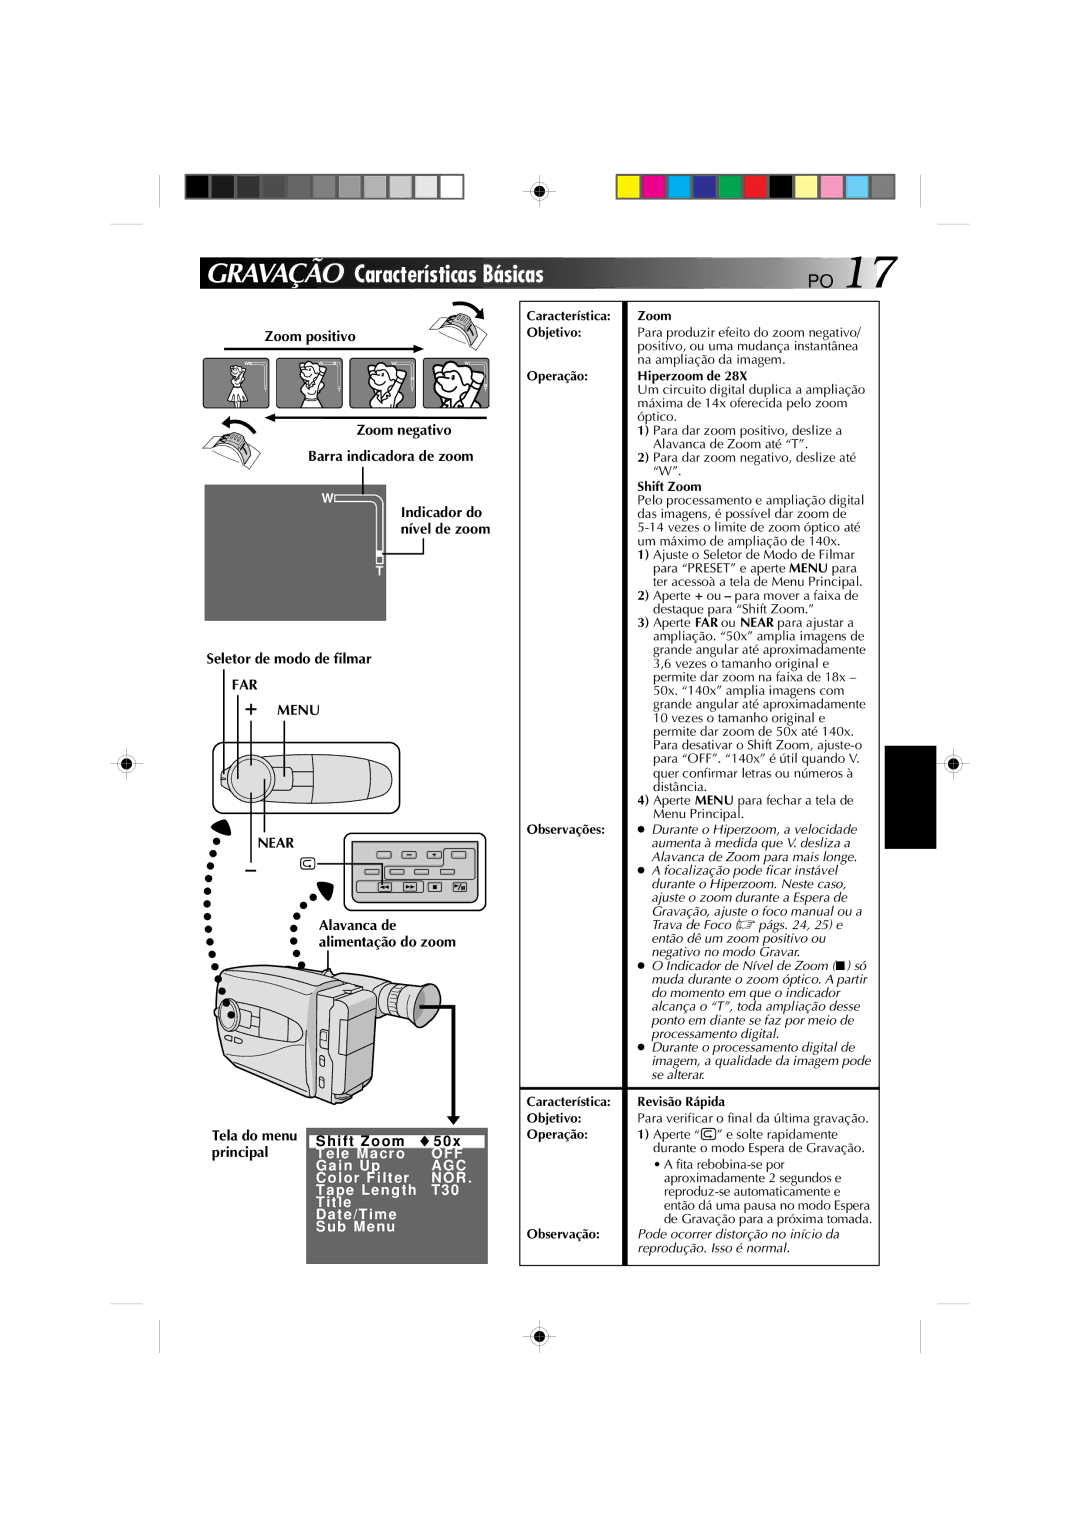 JVC GR-AX1027 manual Gravação Características Básicas, Zoom positivo Zoom negativo Barra indicadora de zoom 